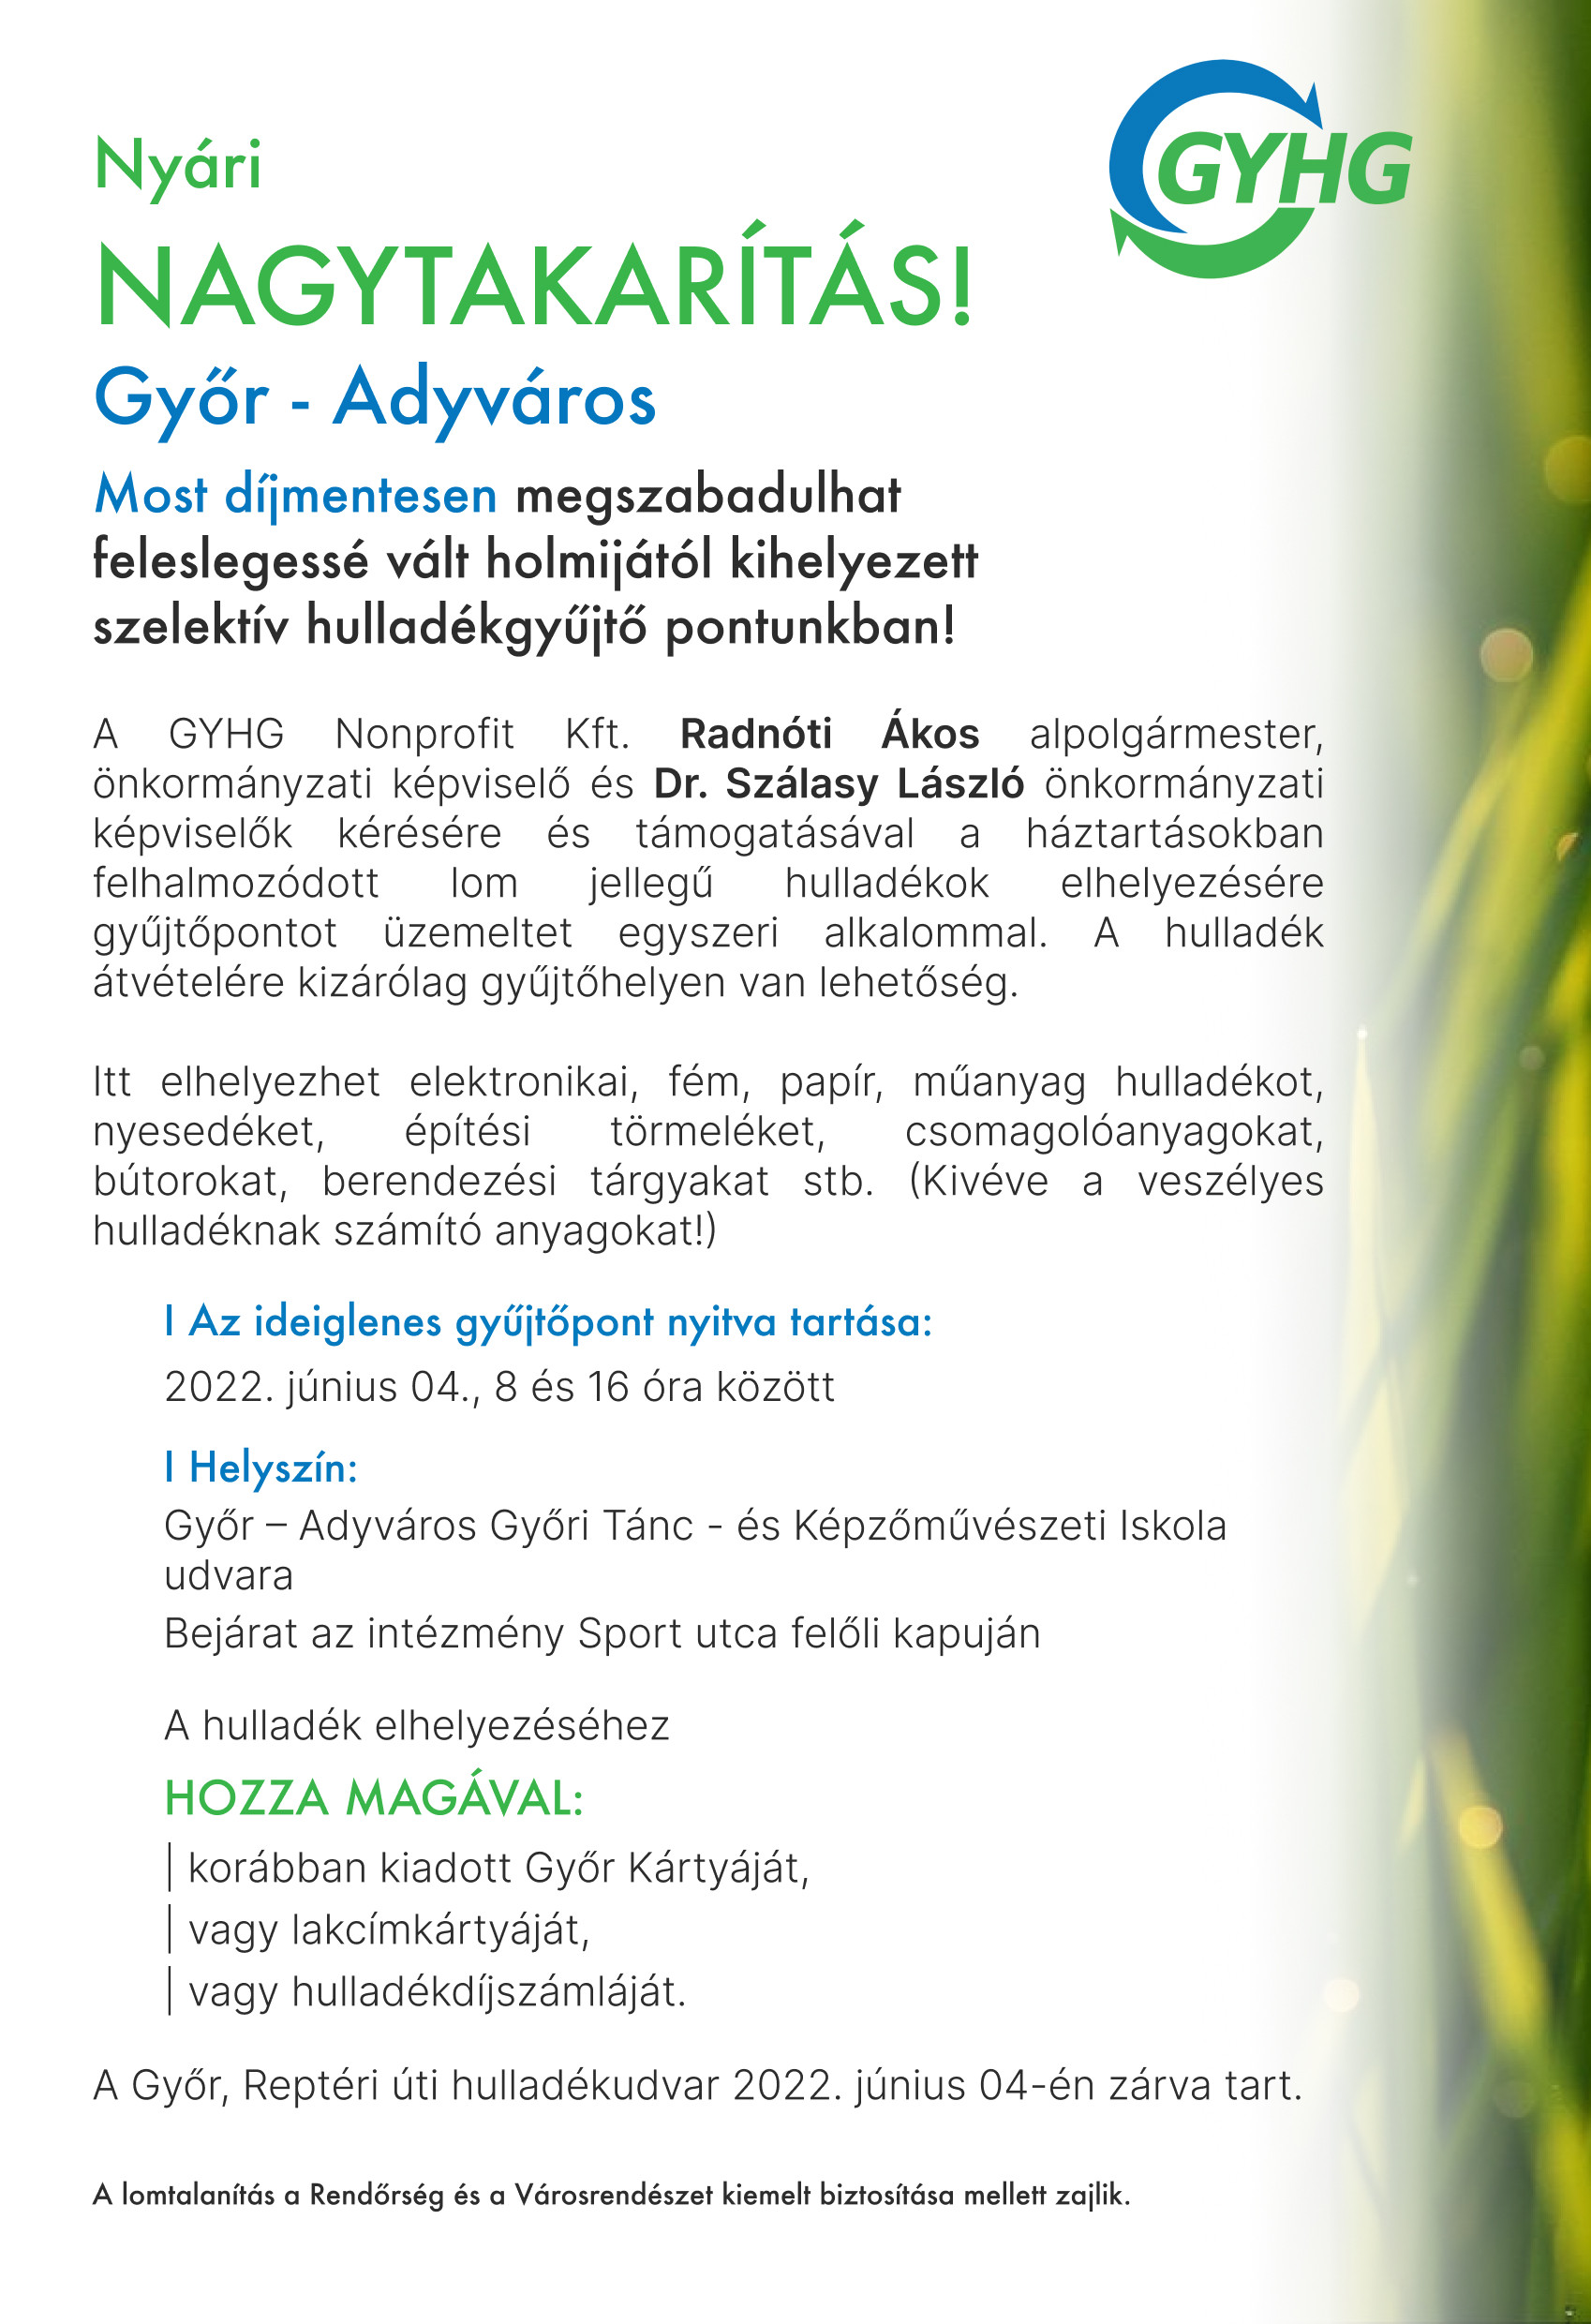 Információ a Győr / Adyváros-i nyári nagytakarításról